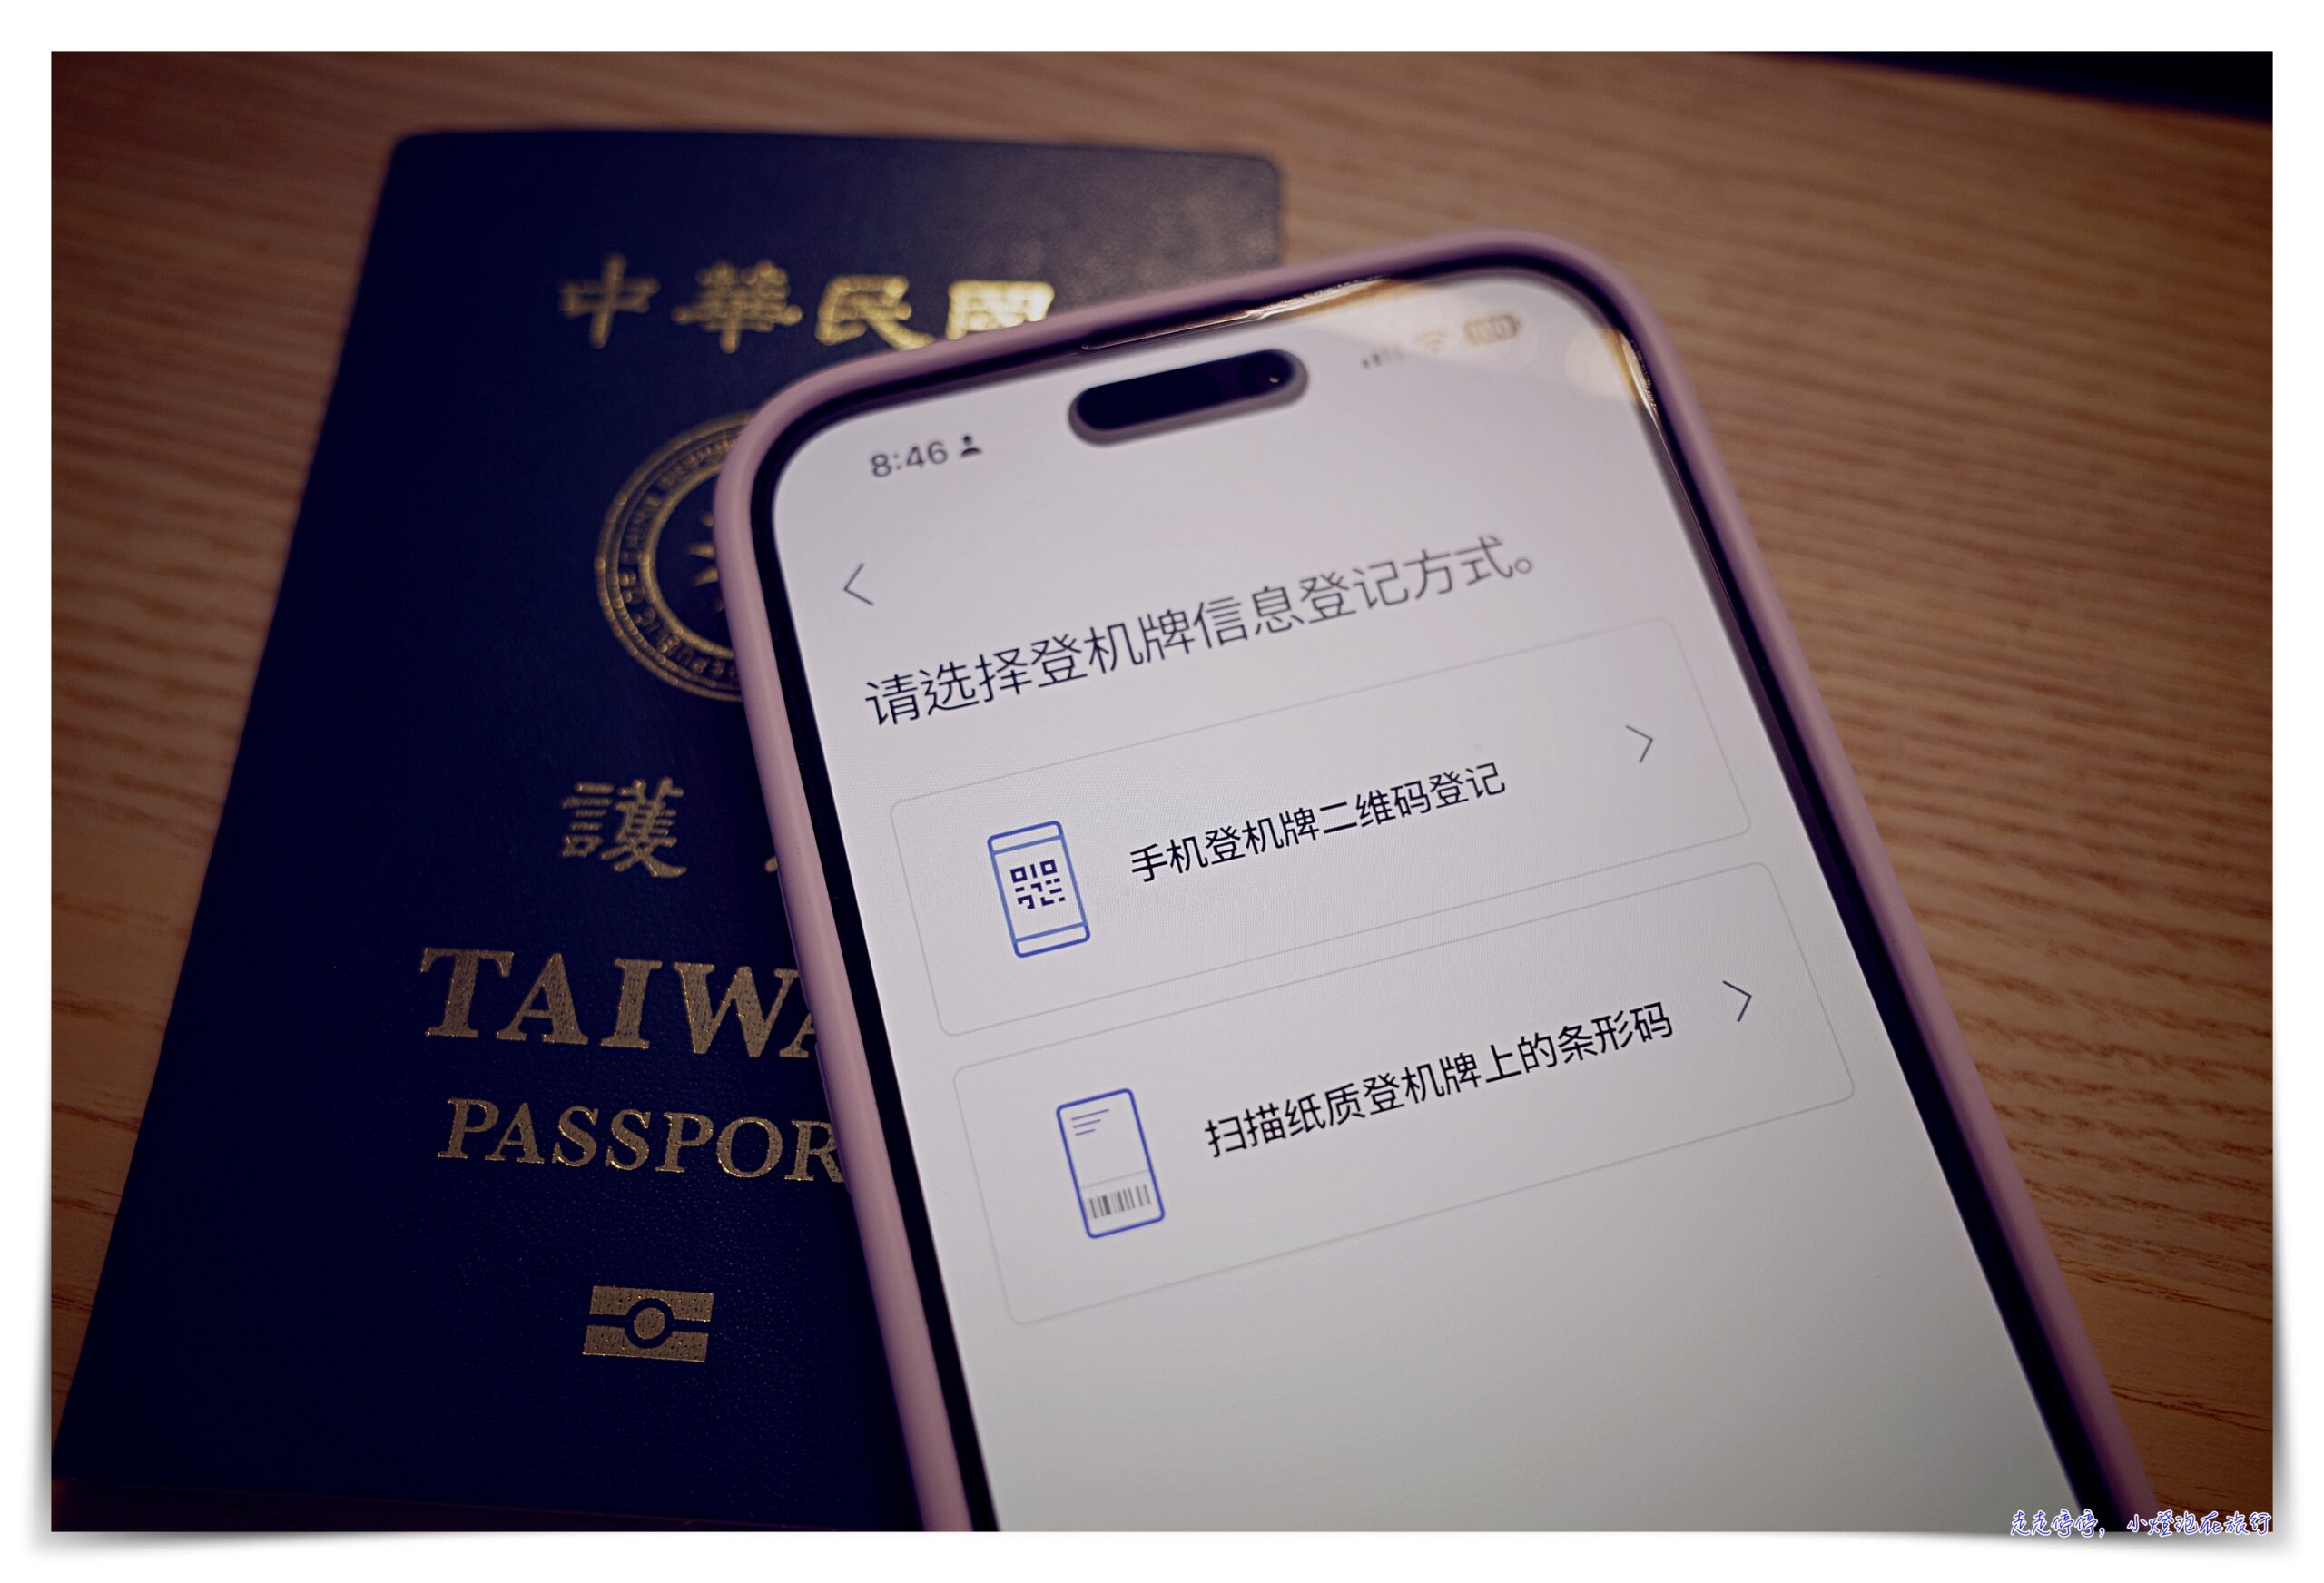 韓國出境自動｜「SmartPass」智能出境服務註冊，可供快速離境通關～韓國出境超強app  ICN SMART PASS